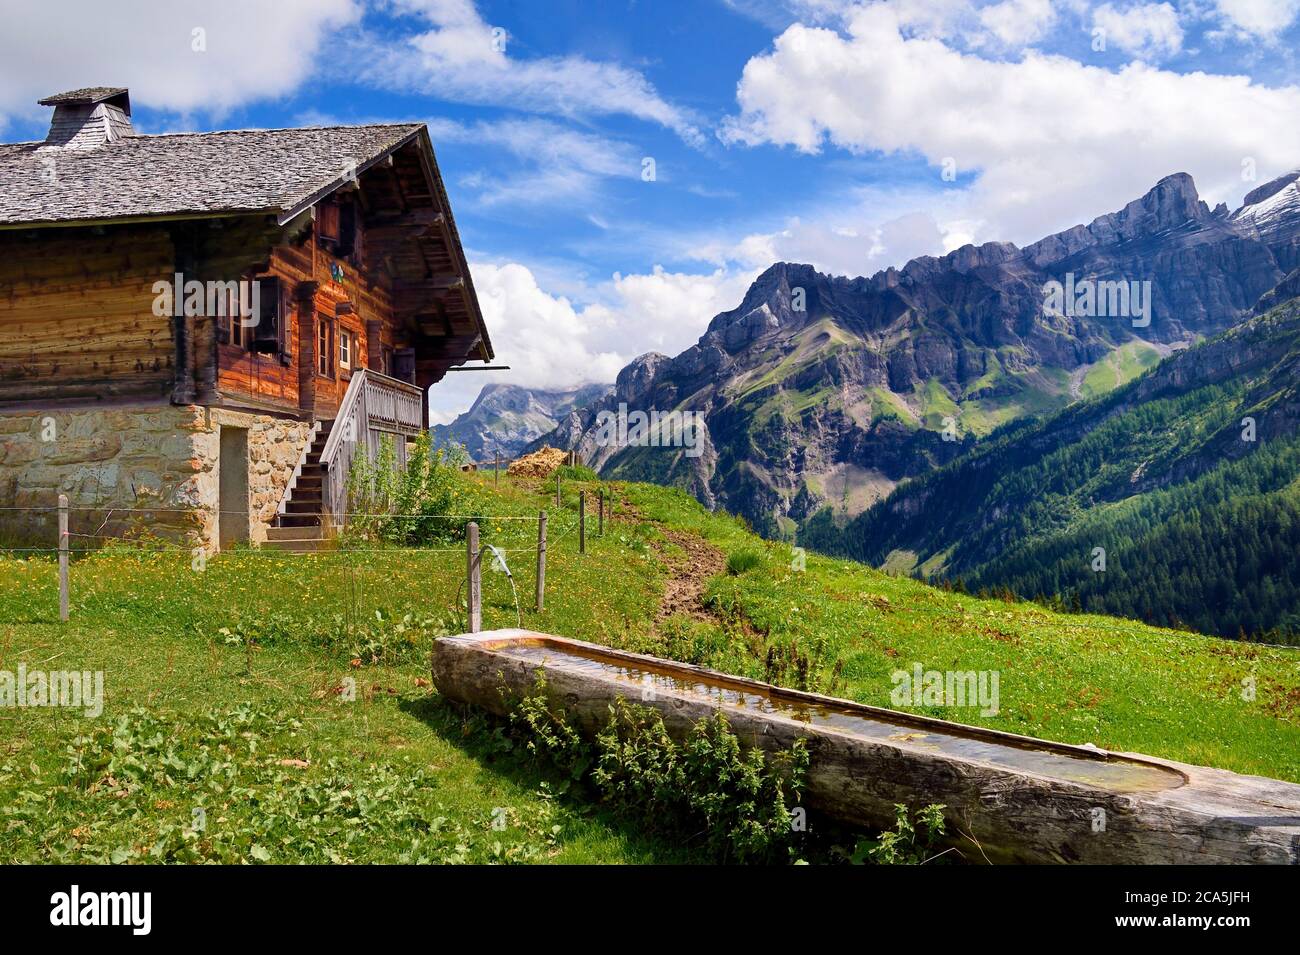 Suisse, canton de Vaud, Ormont-dessus, les Diablerets, ferme au lac de Retaud au-dessus du col du Pillon et de la montagne Schluchhorn en arrière-plan Banque D'Images